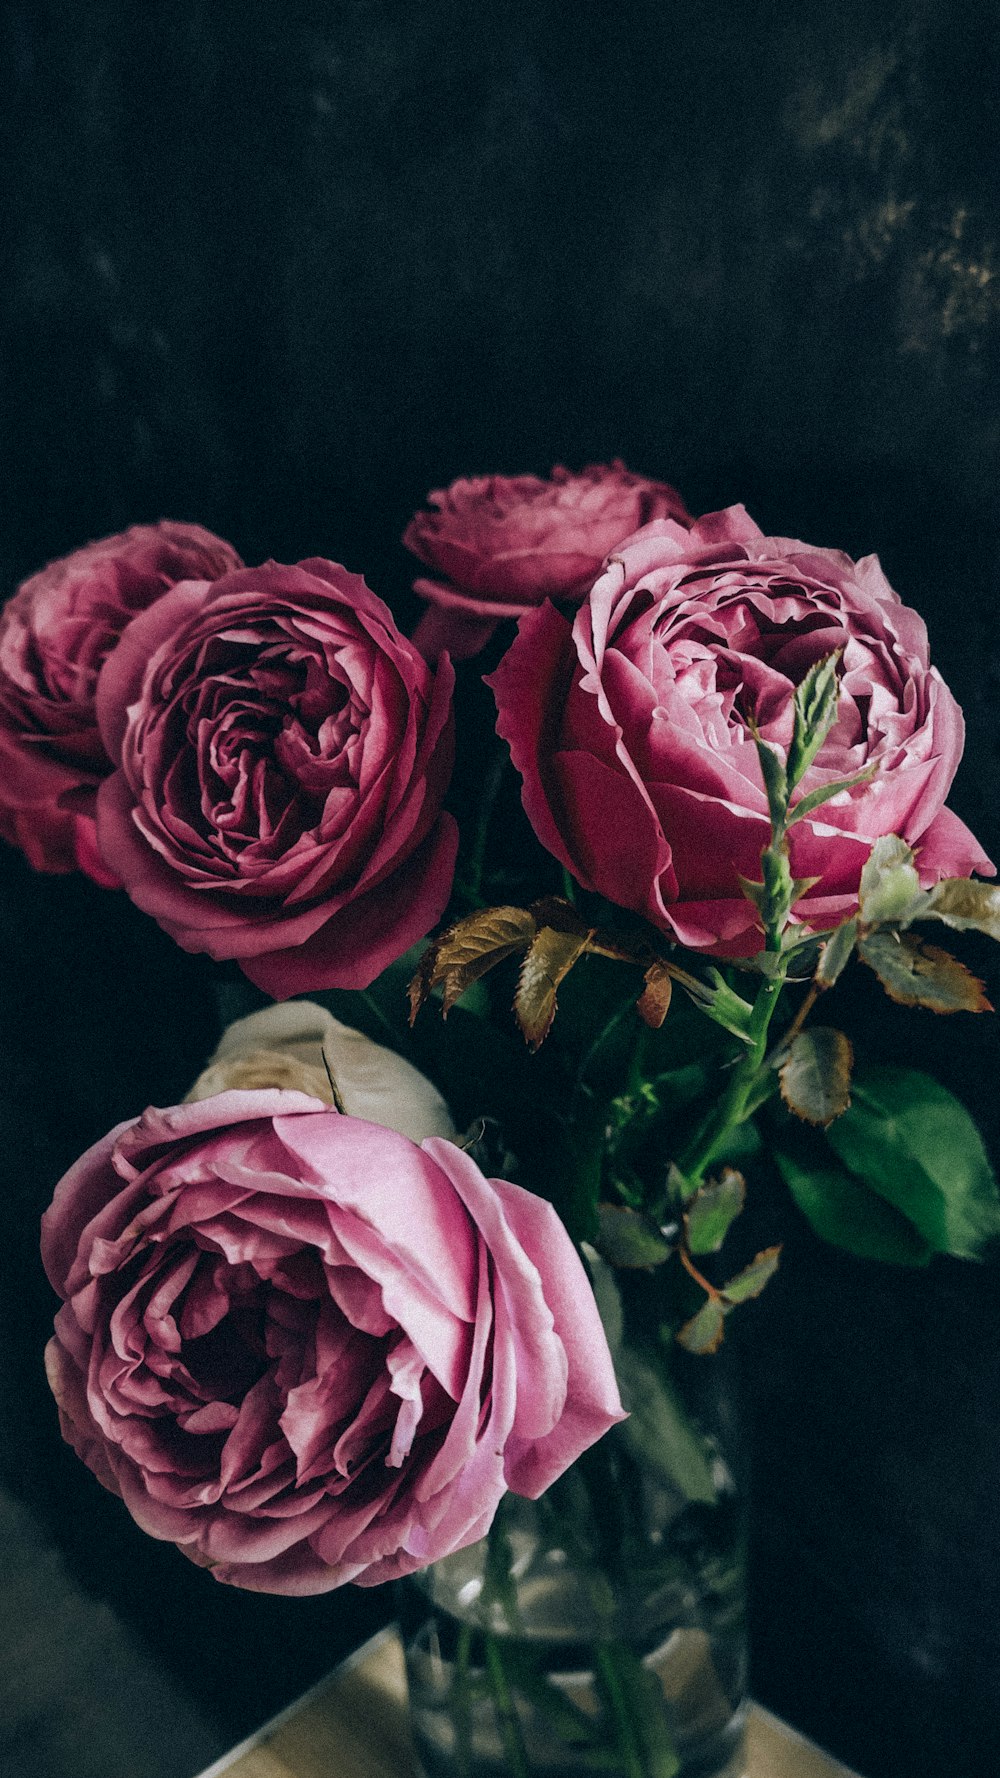 Hoa Hồng Cổ Điển: Hình ảnh các loại hoa hồng cổ điển với những cánh hoa đầy quyến rũ được thu hút nhiều người yêu thích hoa. Hãy xem hình ảnh để khám phá thêm về vẻ đẹp của loài hoa này.